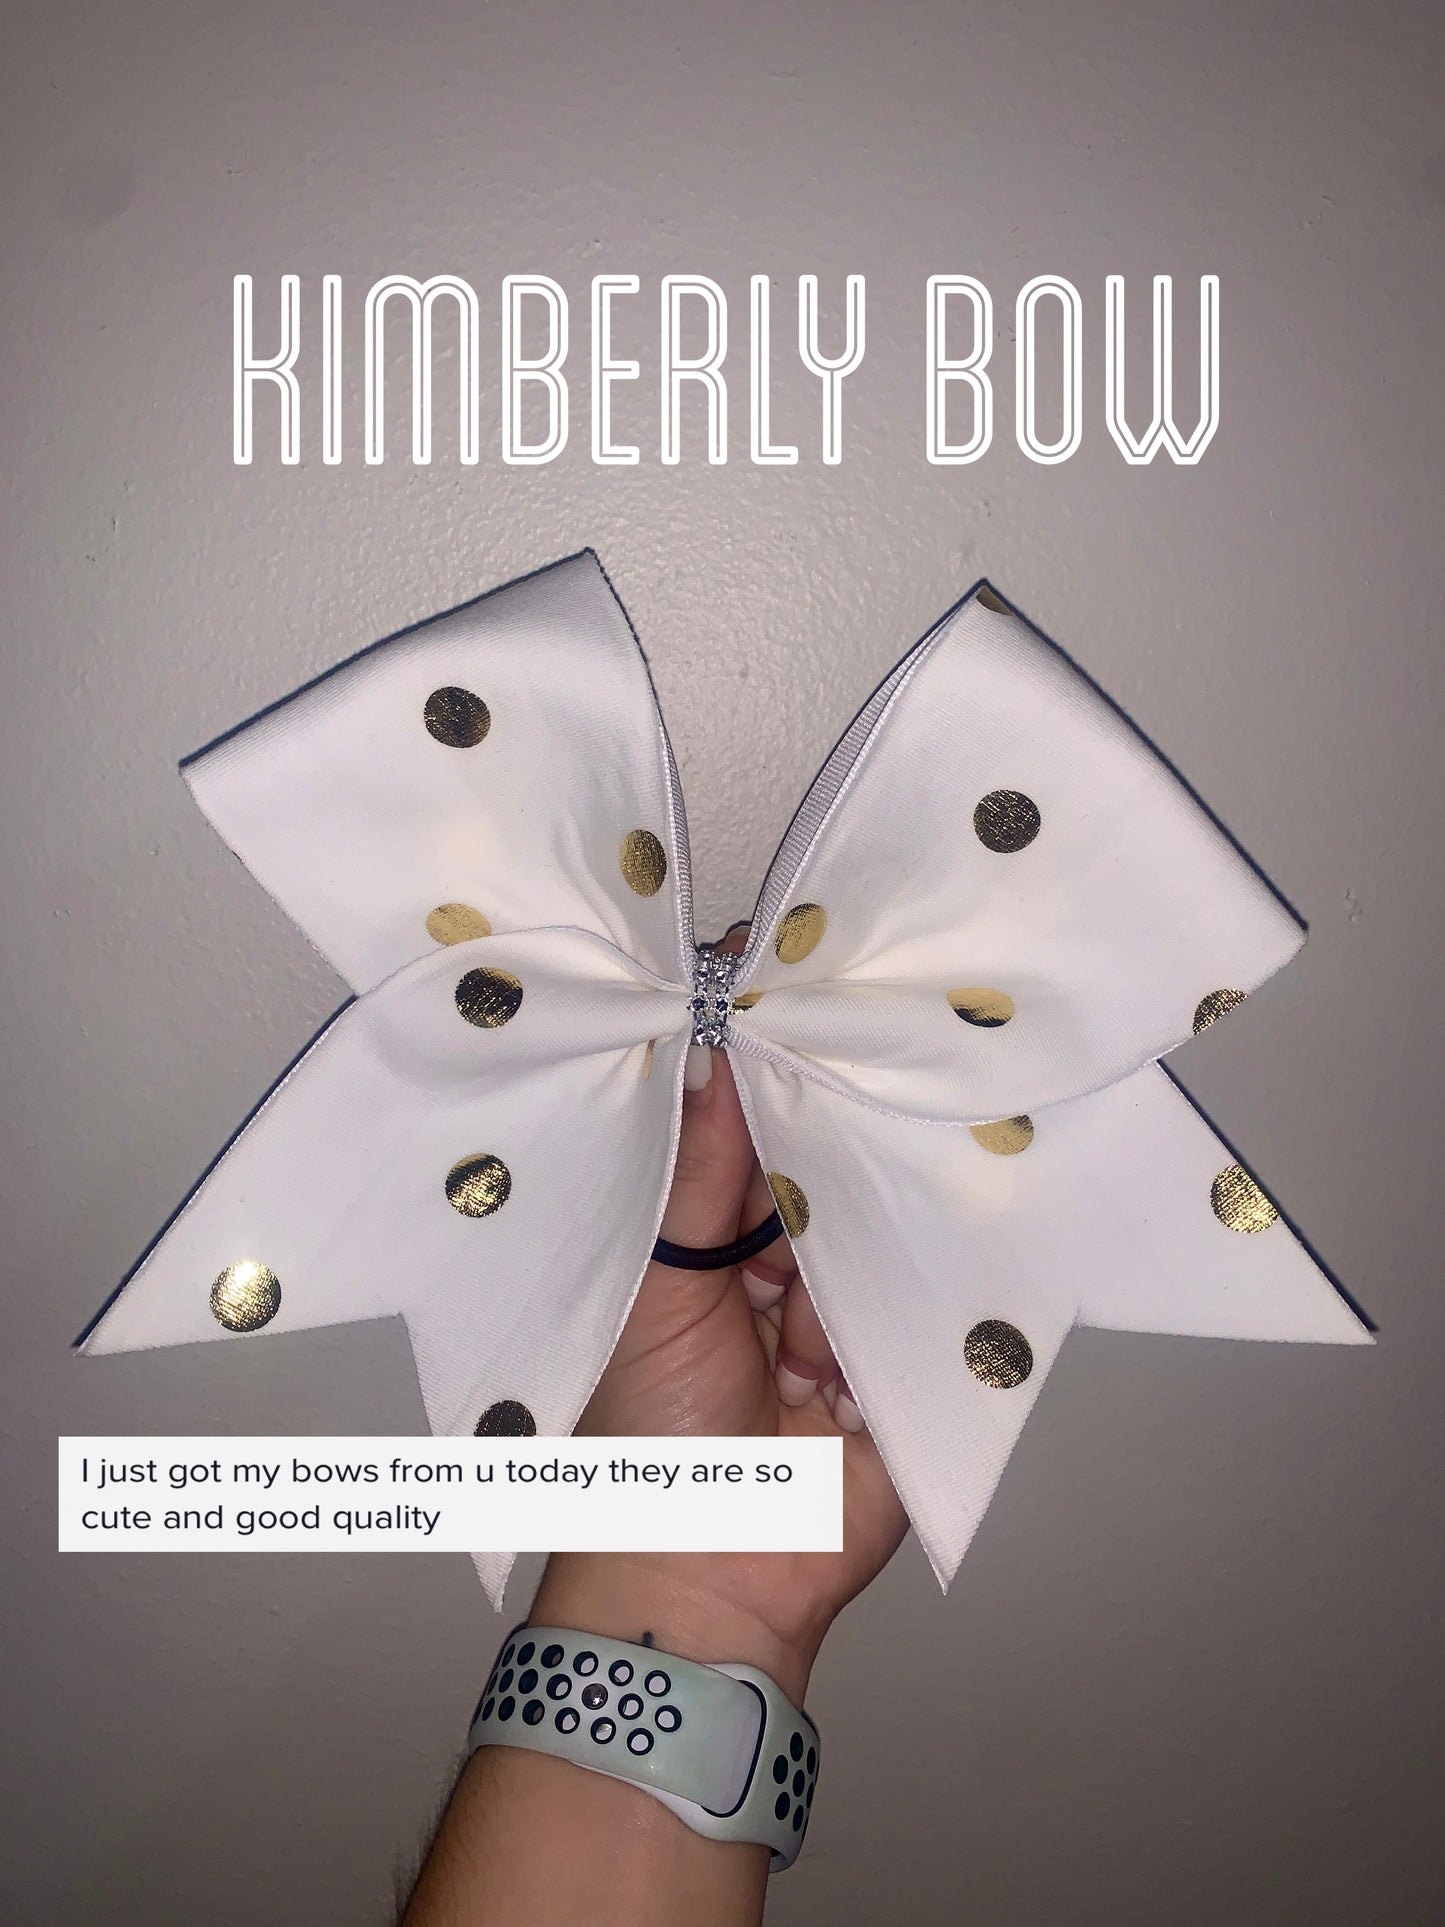 Kimberly Bow